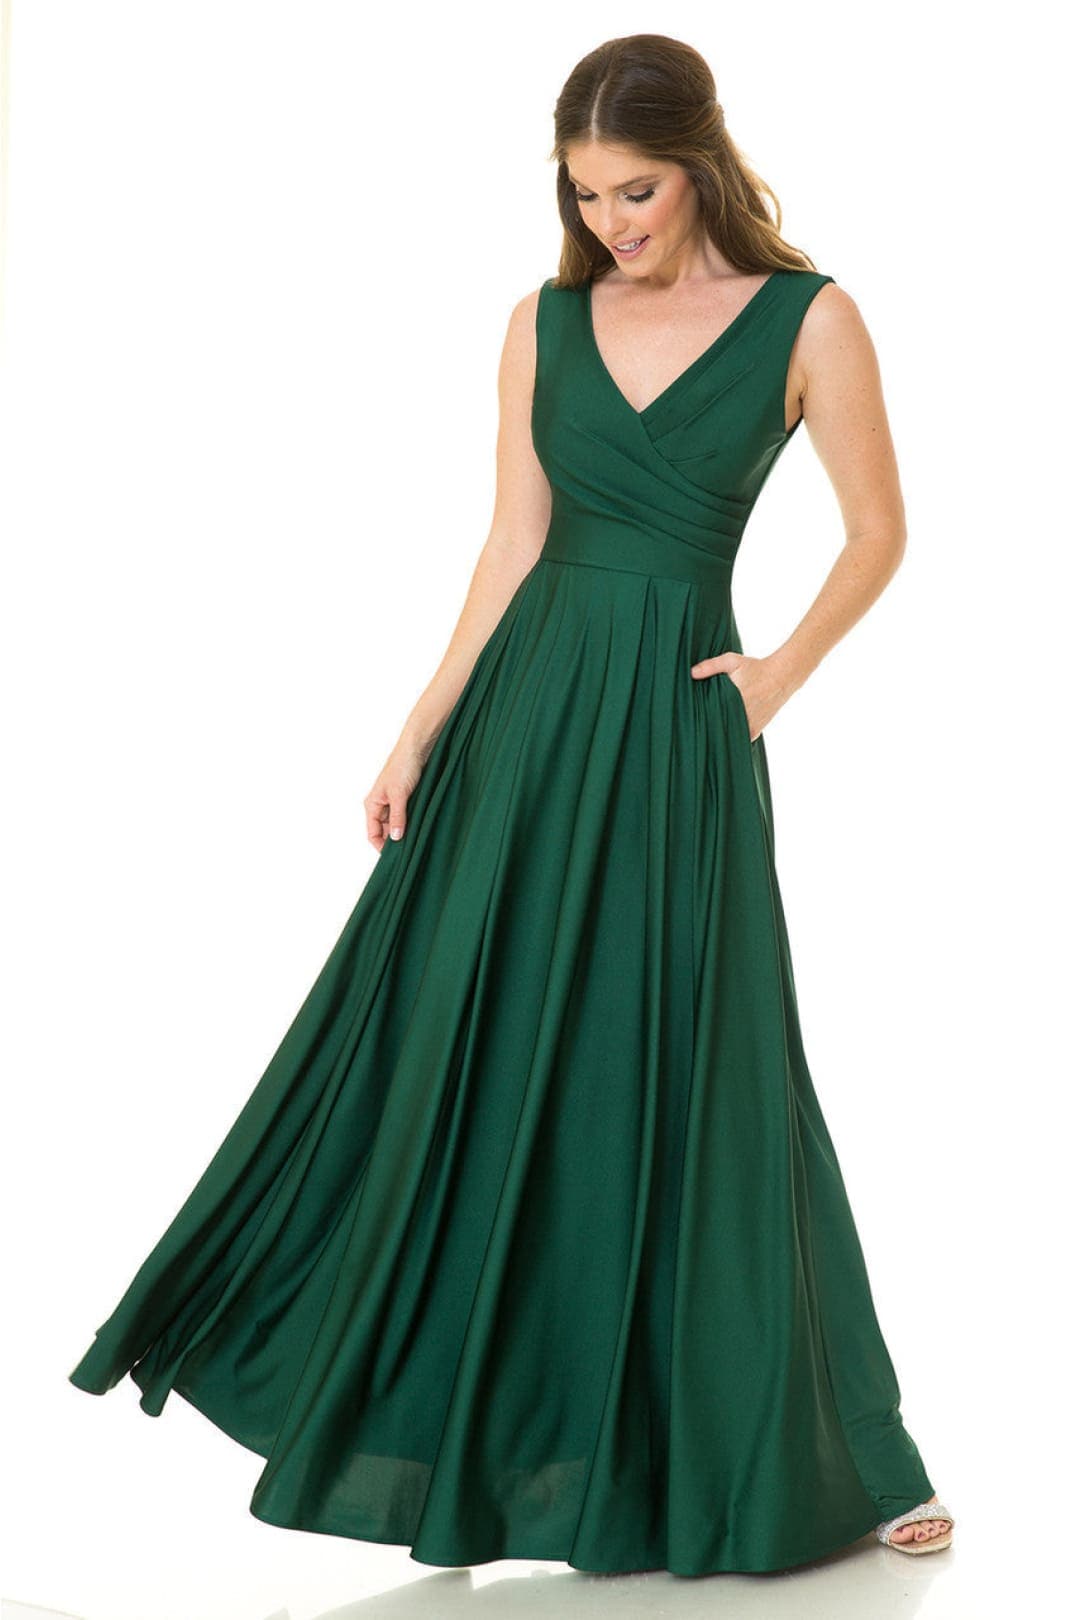 Lenovia 5242 Side Pockets A-line Shiny Formal Gown - Dress